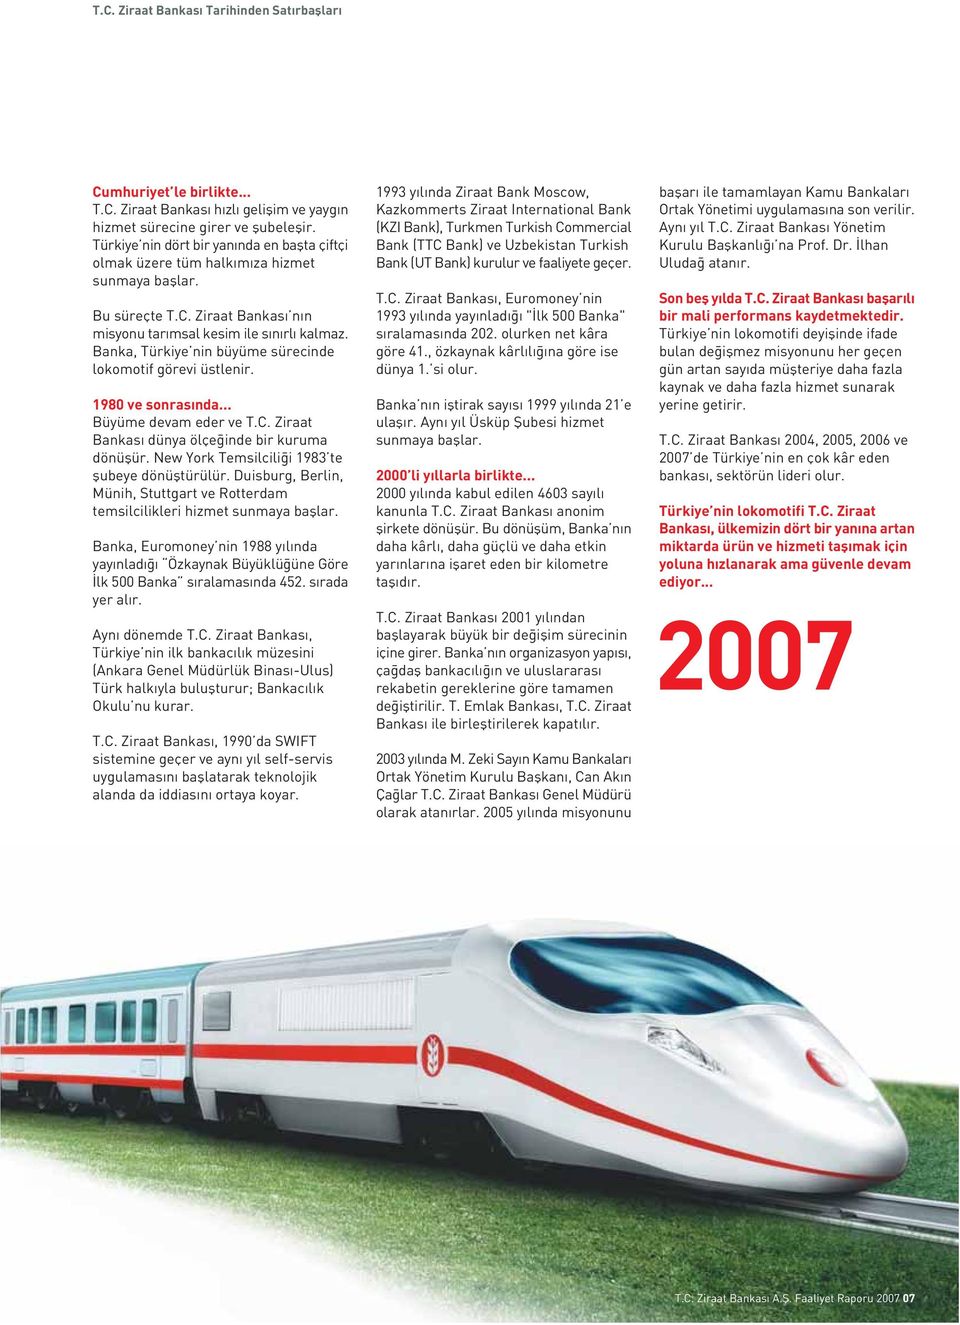 Banka, Türkiye nin büyüme sürecinde lokomotif görevi üstlenir. 1980 ve sonras nda... Büyüme devam eder ve T.C. Ziraat Bankas dünya ölçe inde bir kuruma dönüflür.